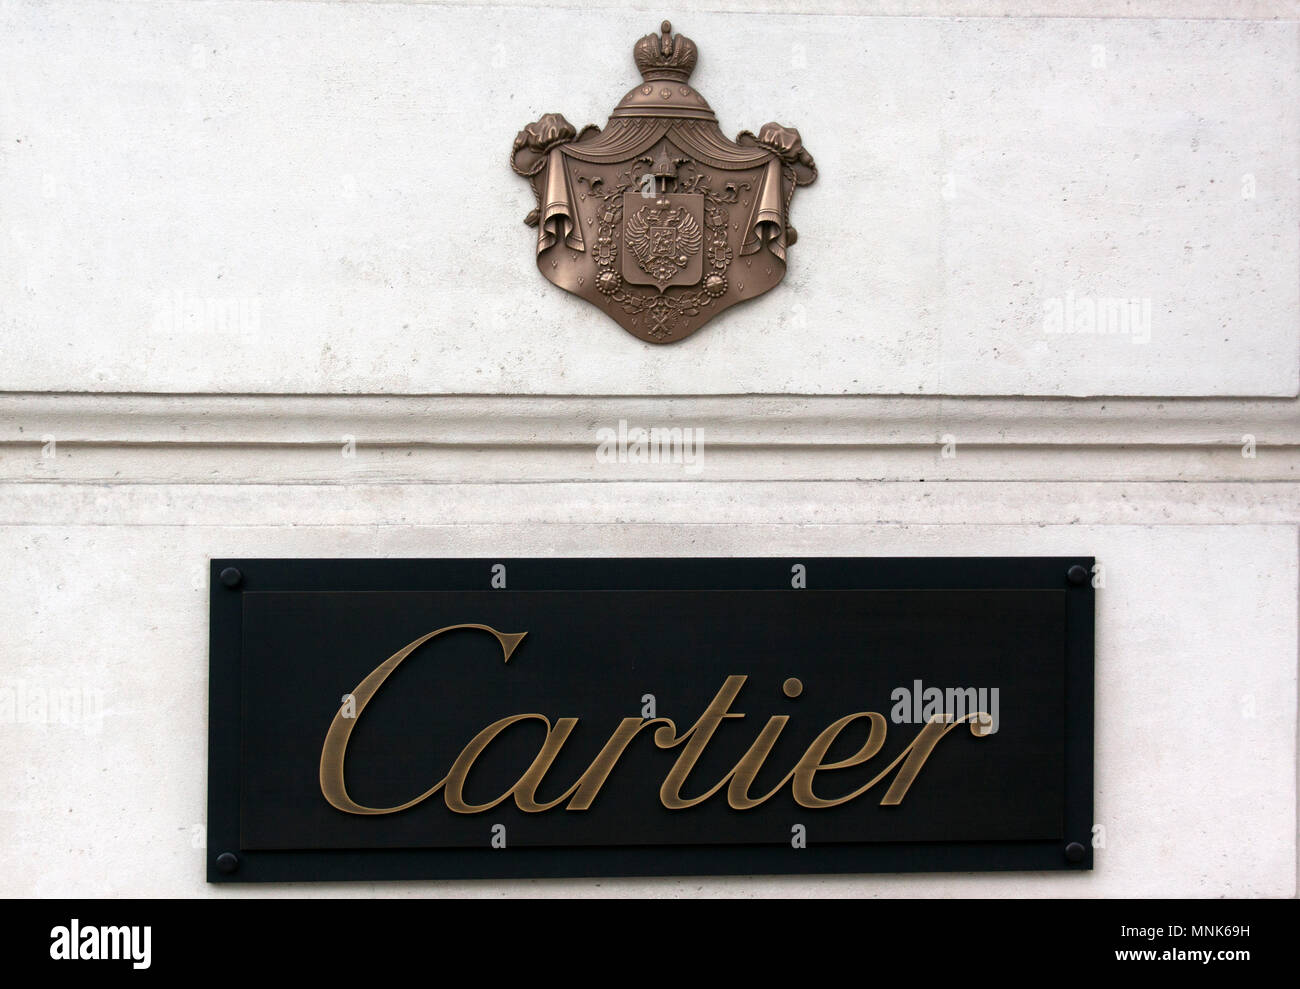 cartier france address